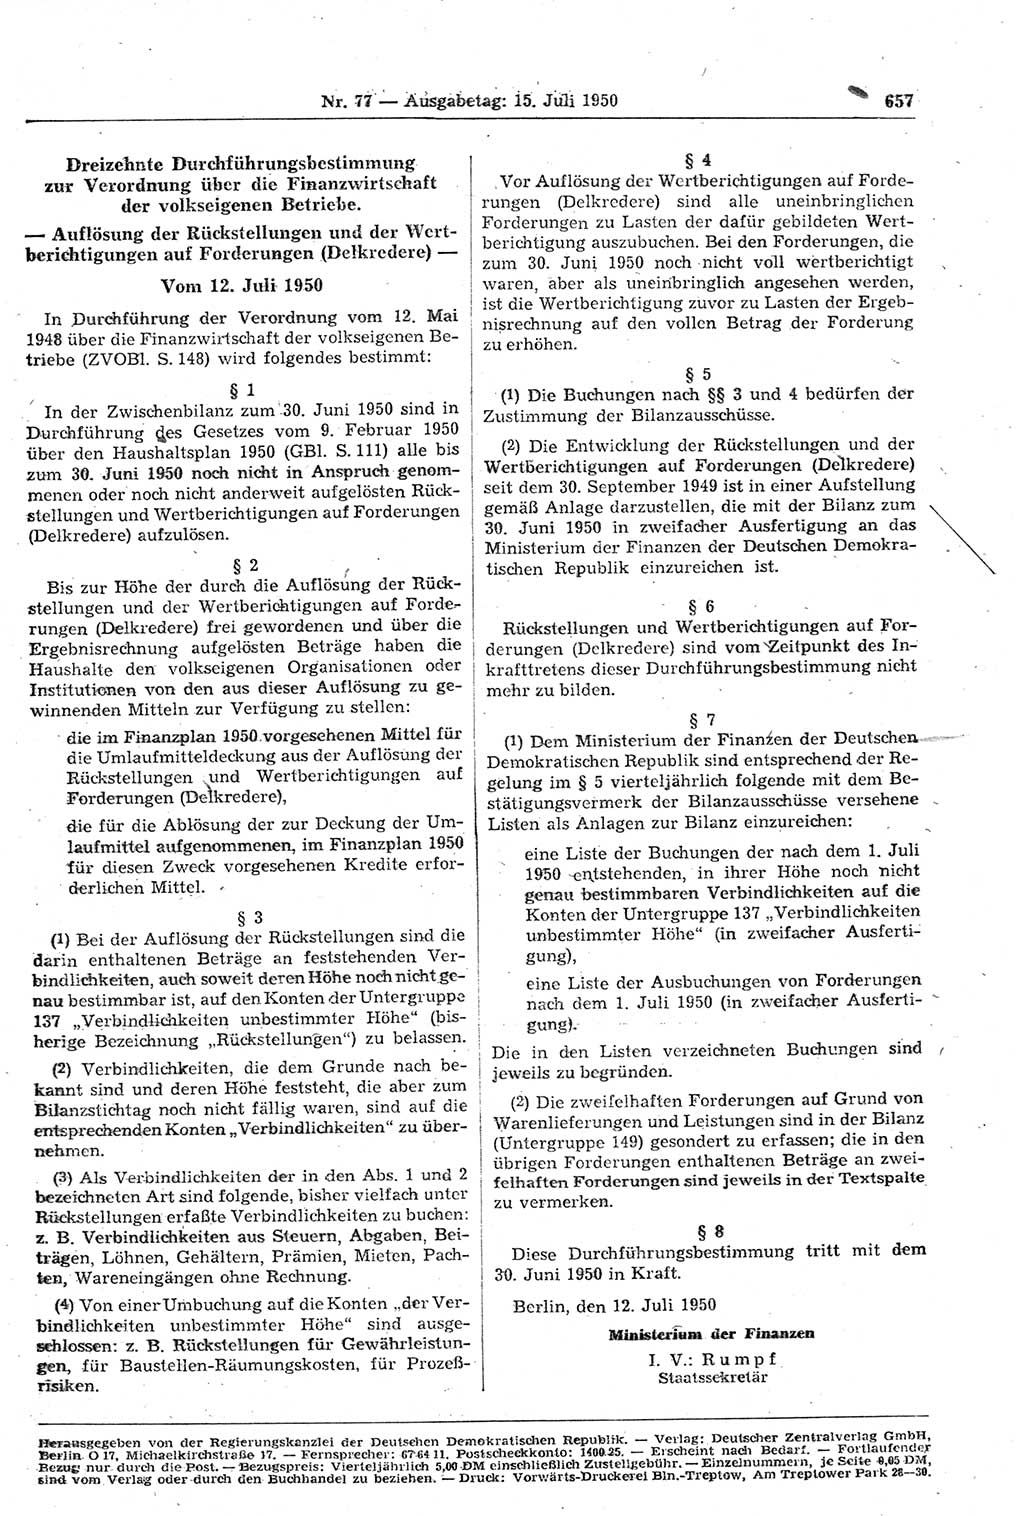 Gesetzblatt (GBl.) der Deutschen Demokratischen Republik (DDR) 1950, Seite 657 (GBl. DDR 1950, S. 657)